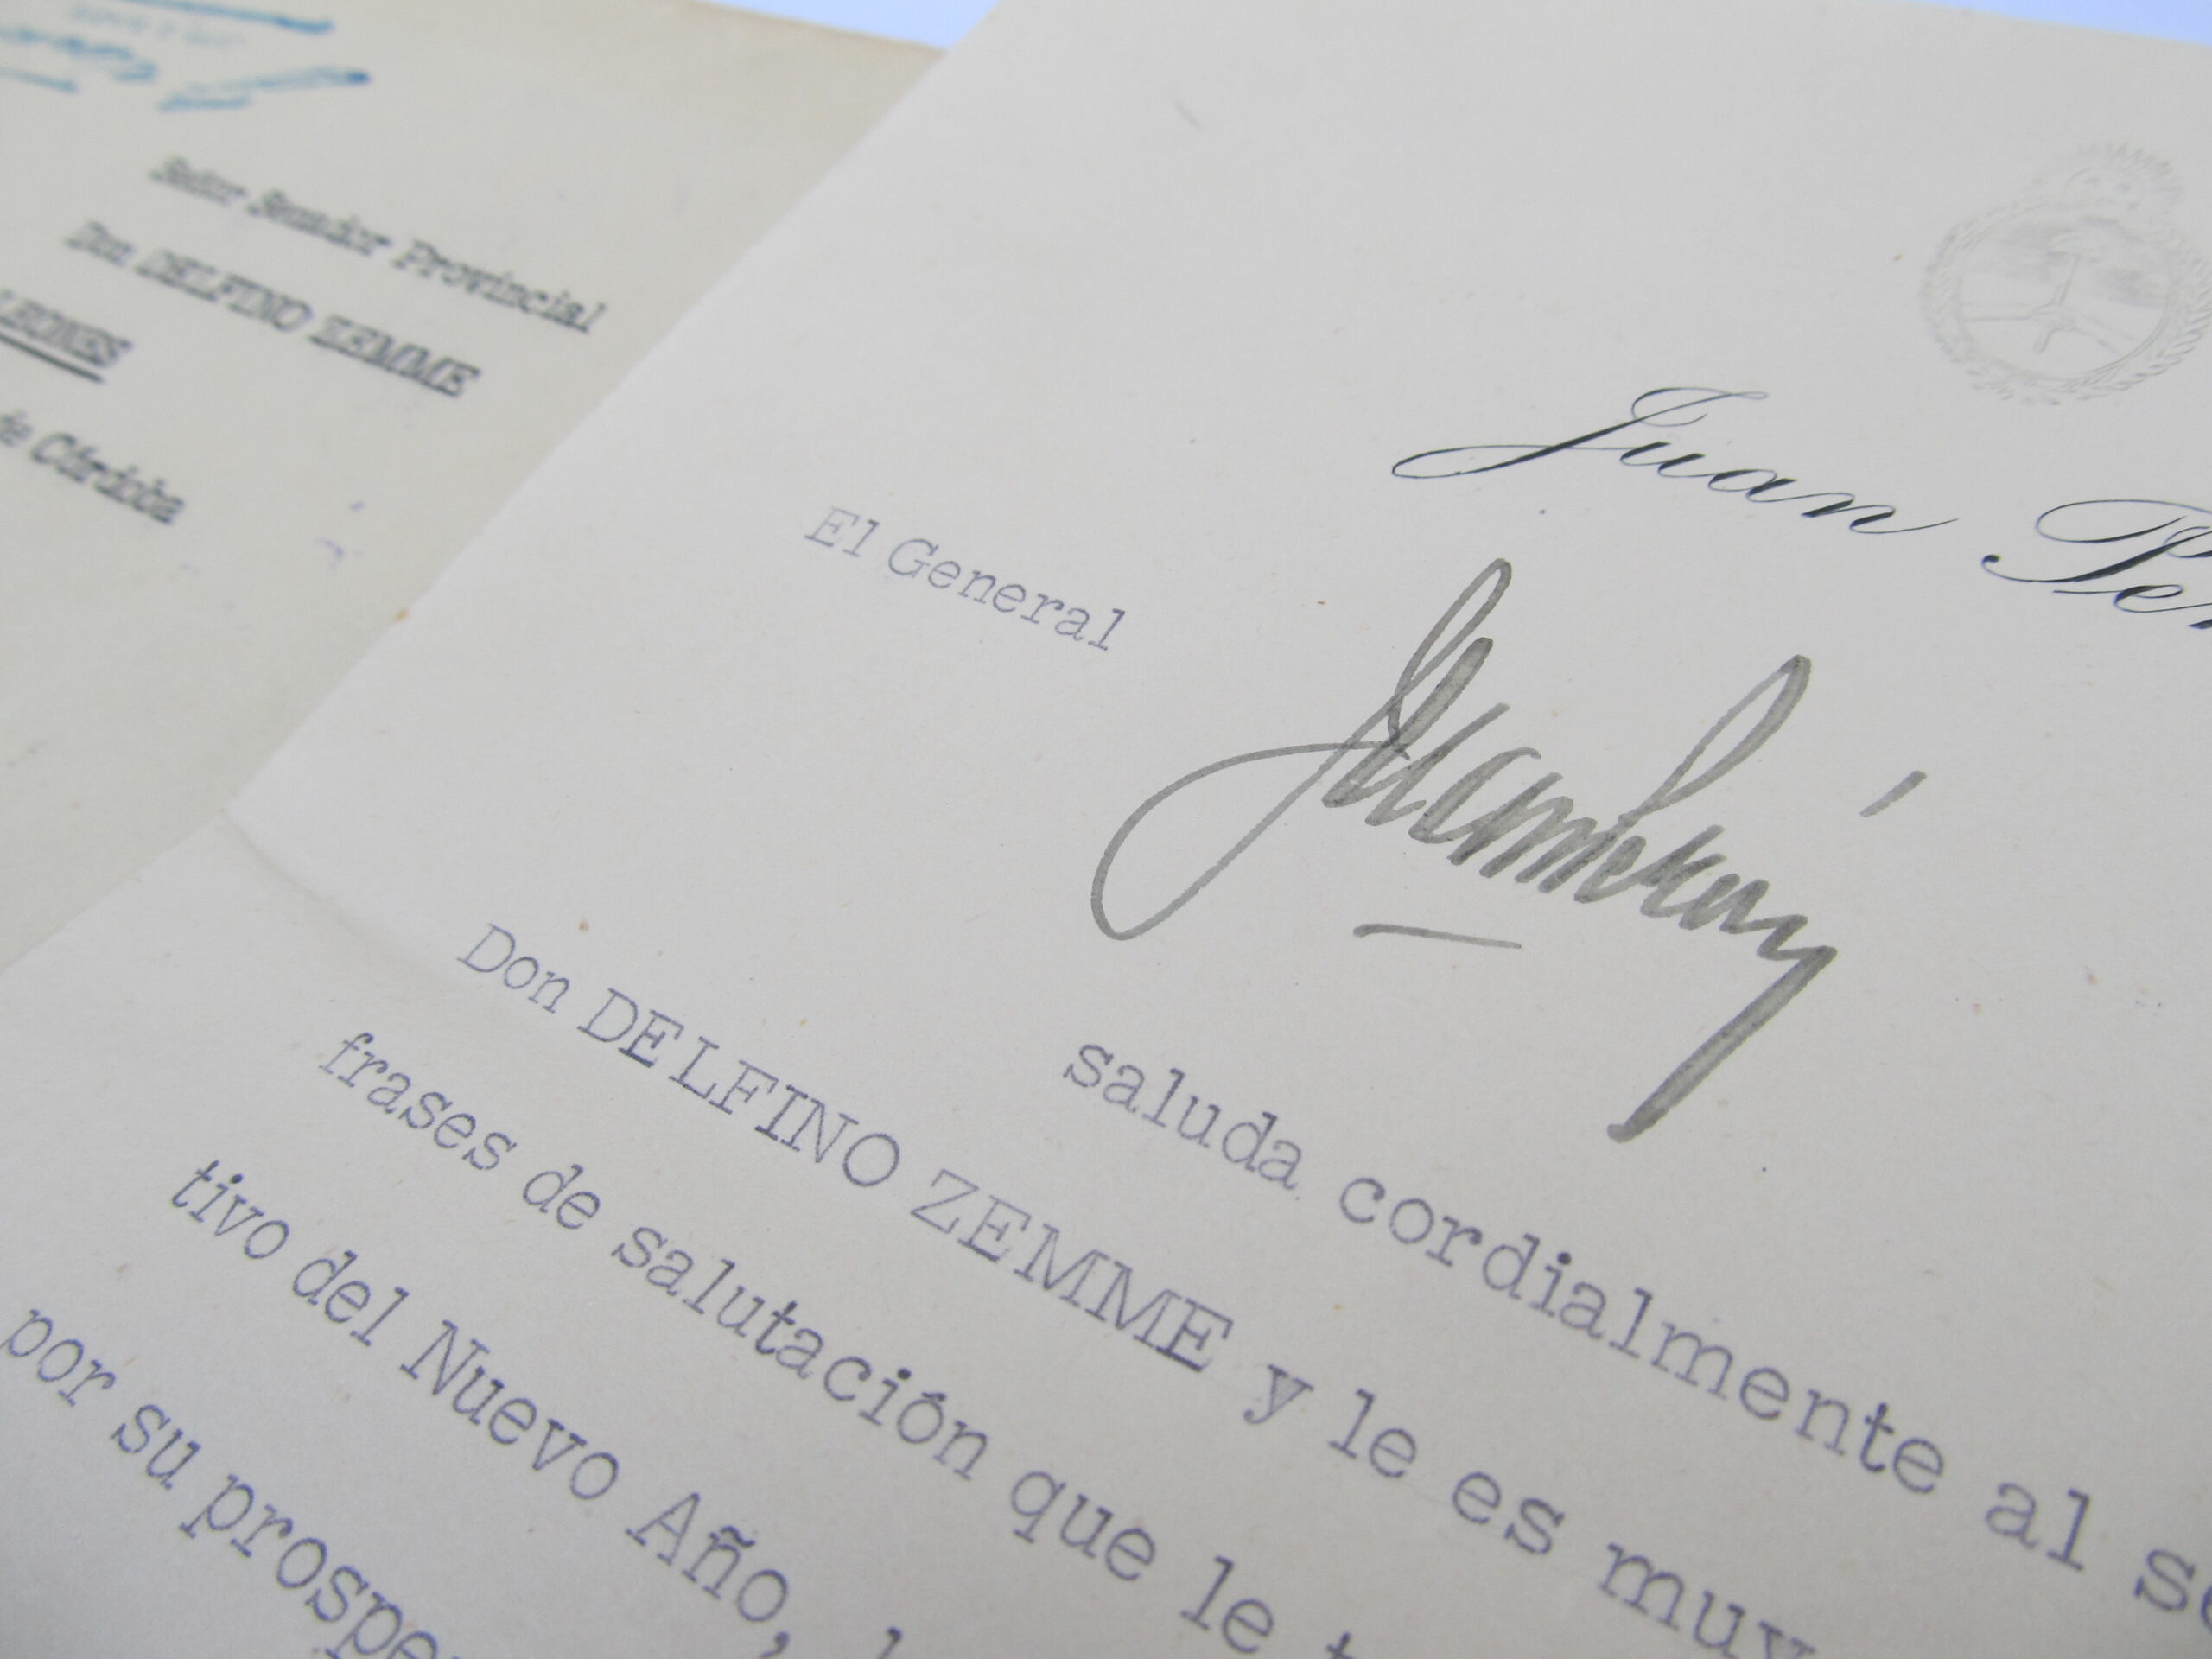 Detalle de carta firmada por el presidente Perón, dirigida al senador Delfino Zemme. Colección MuHLI.